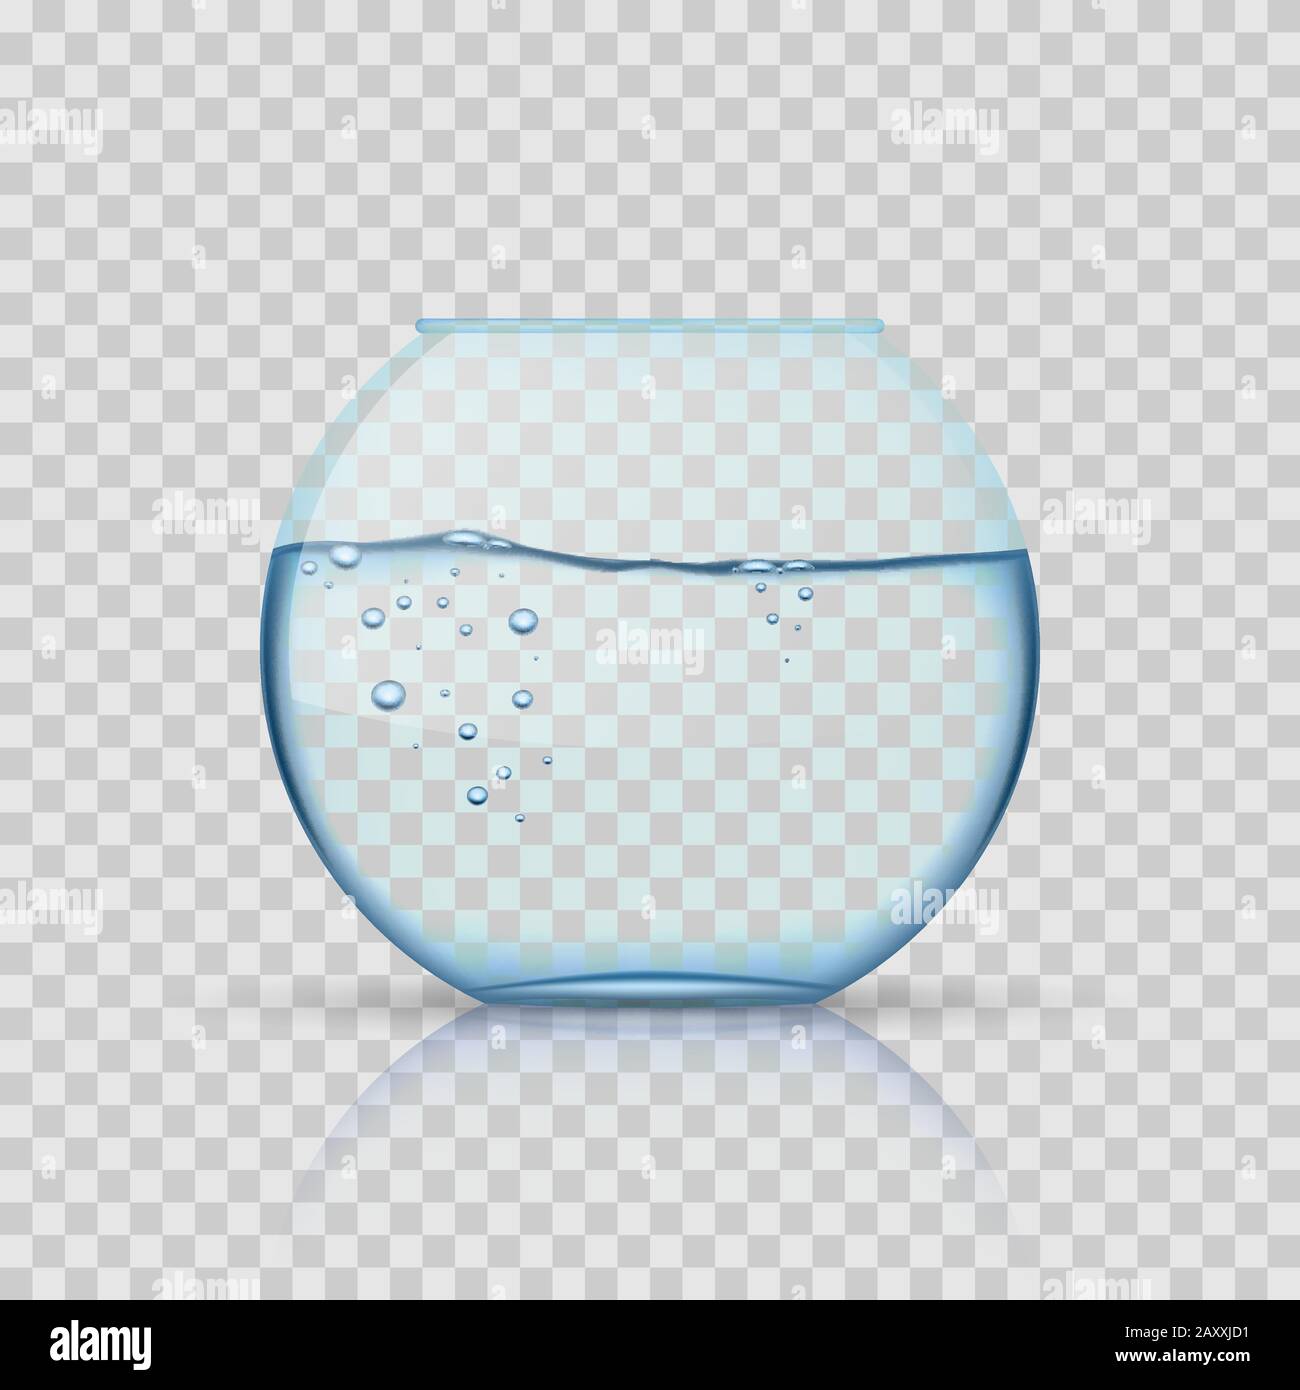 Ciotola di pesce in vetro realistica, acquario con acqua su sfondo trasparente. Acquari in vetro, acquari per pesci o acquari con liquido trasparente. V Illustrazione Vettoriale